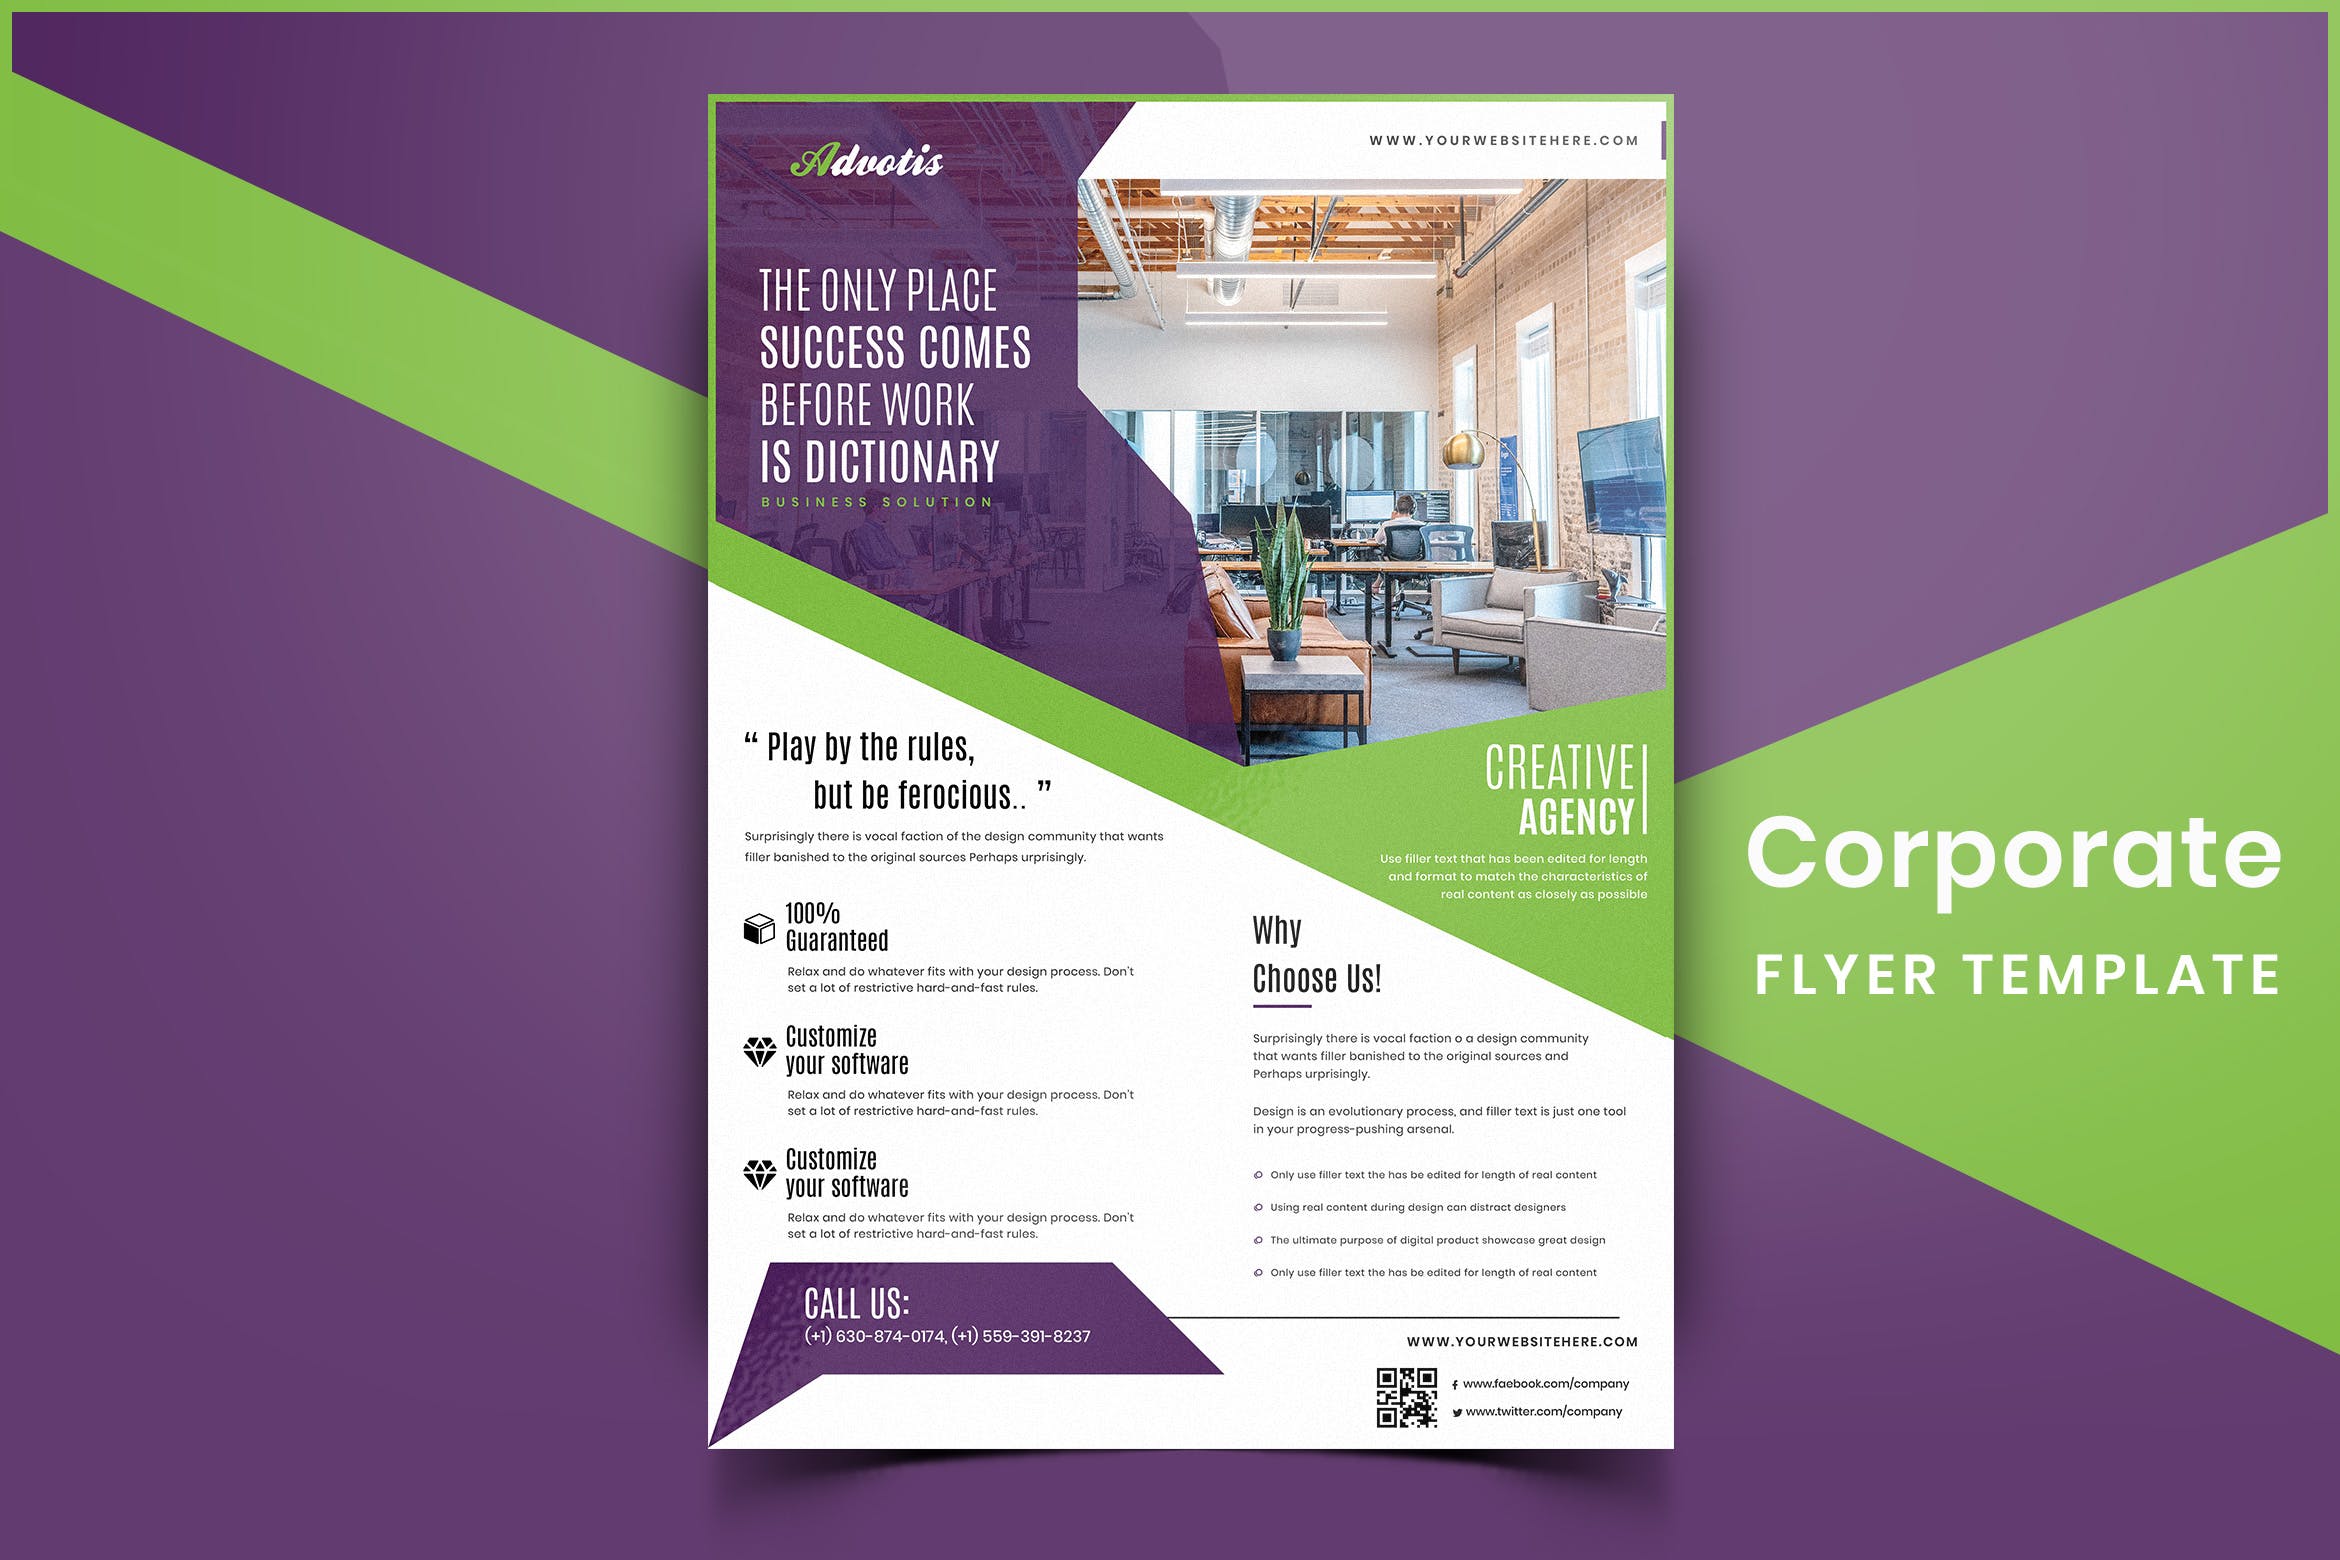 现代设计风格企业宣传单版式模板v01 Corporate Flyer Template-01插图